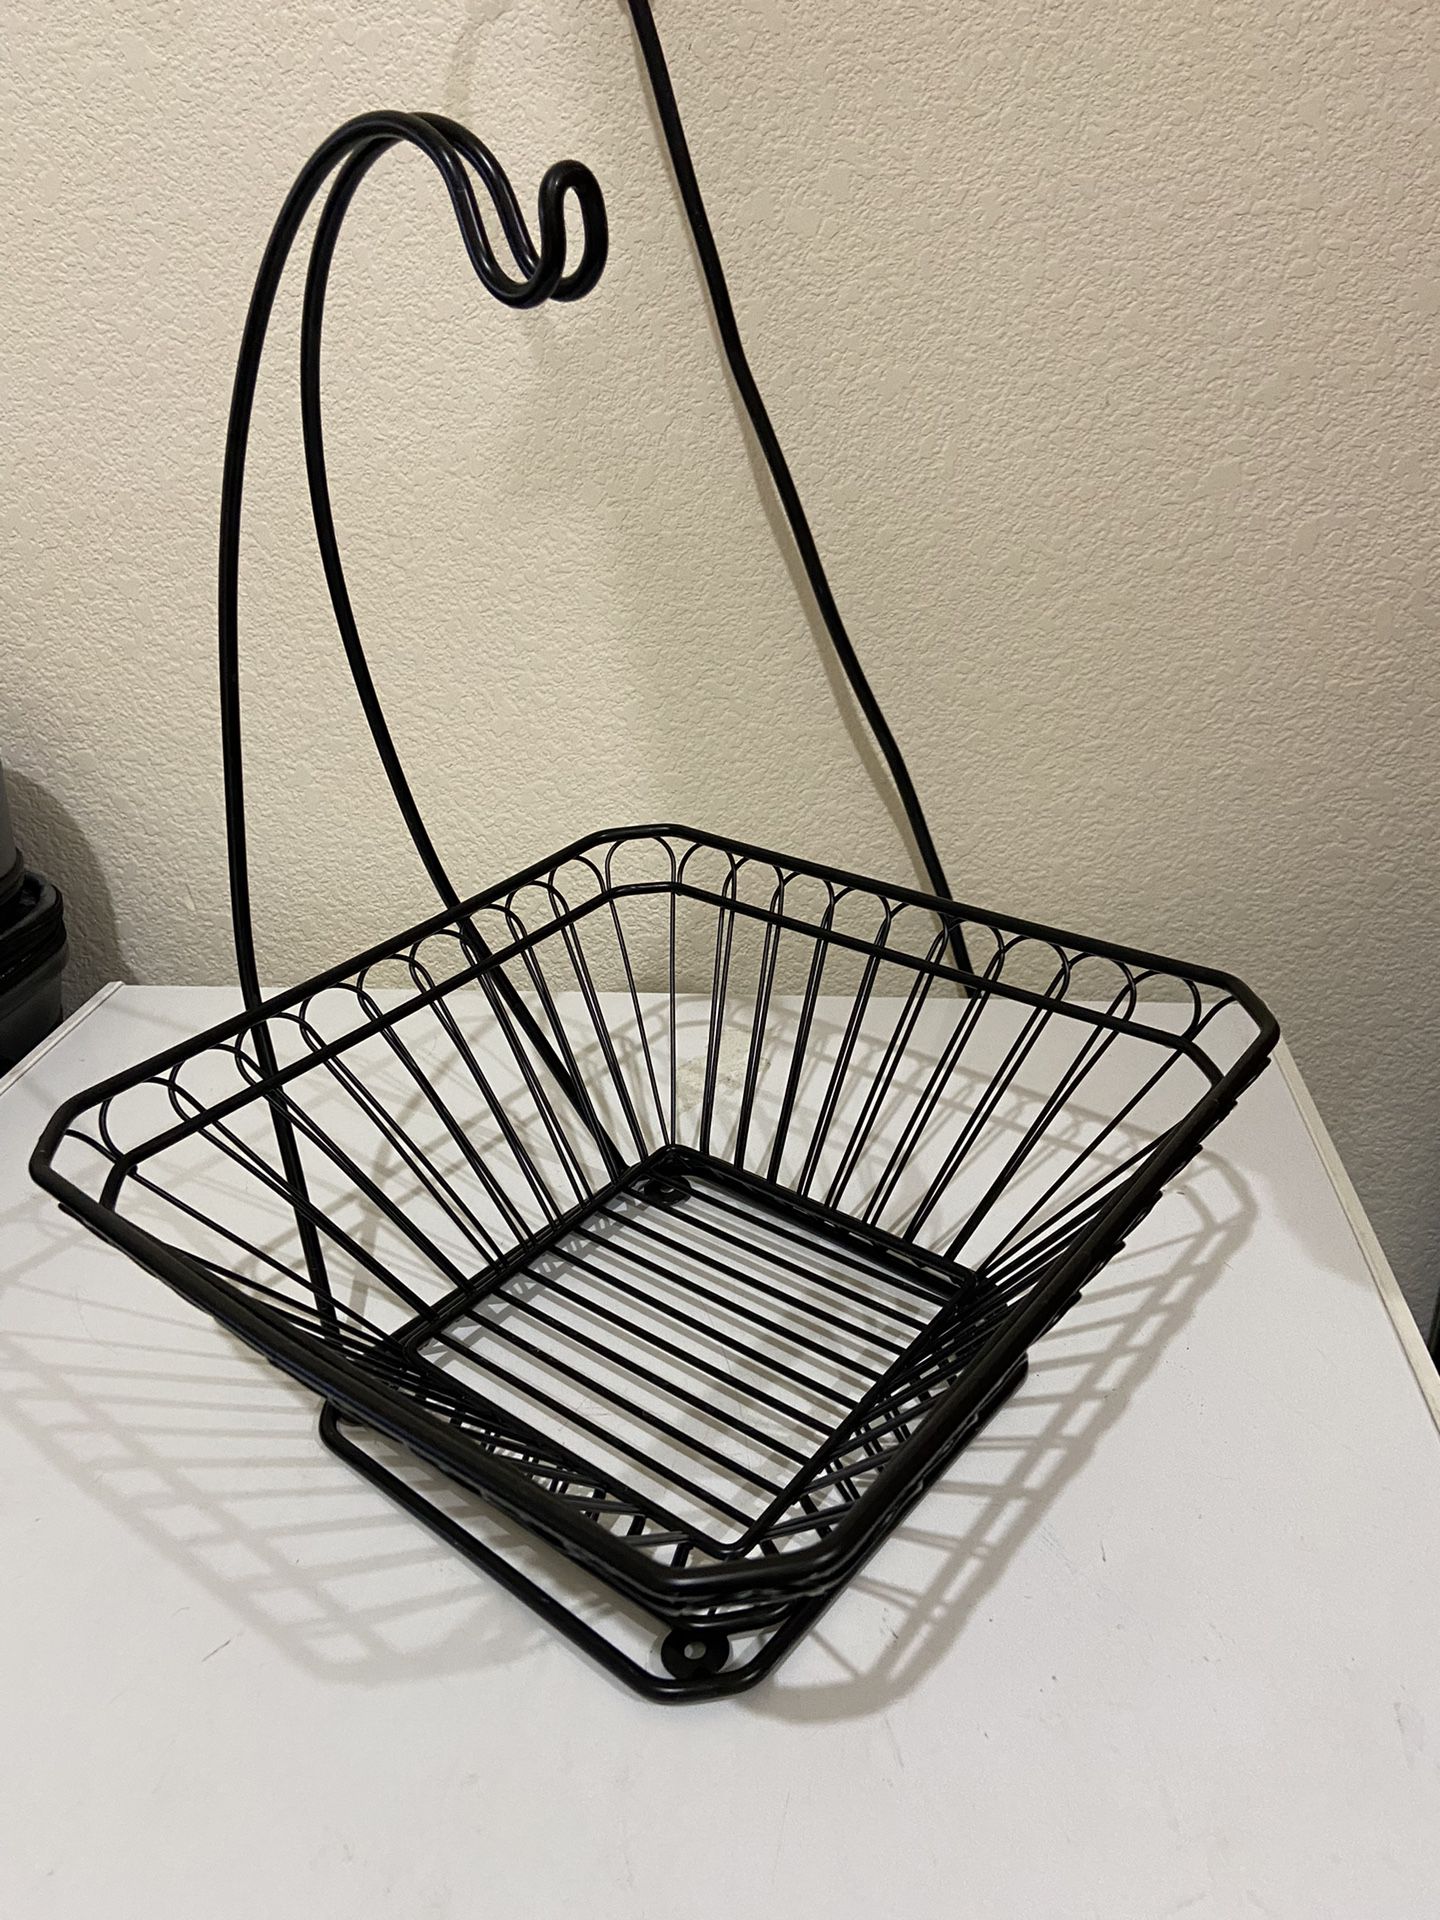 Fruit Basket With Hanger